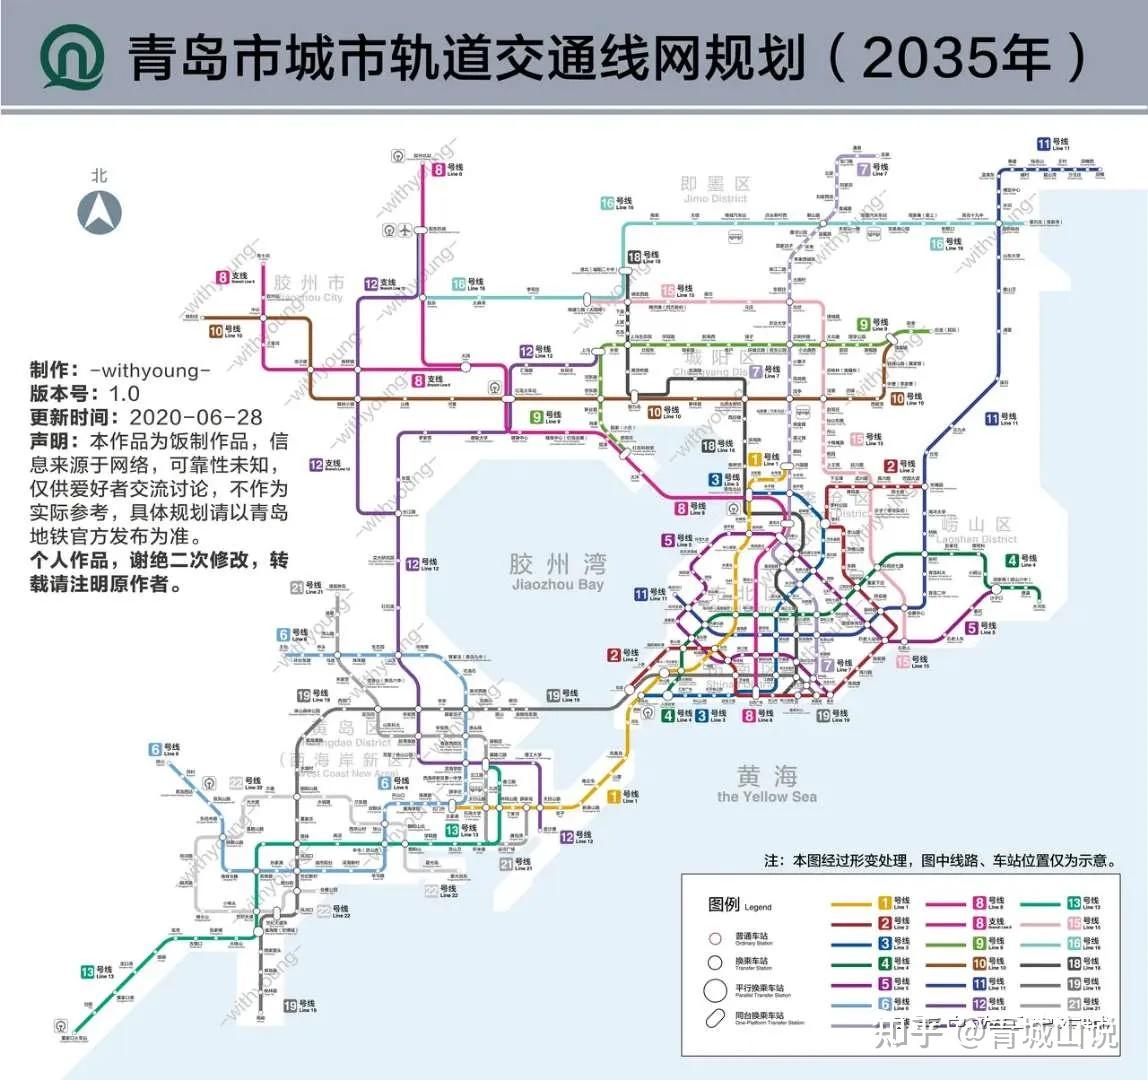 有一个青岛地铁2035年版流传于网络:02 市内远期大畅想三期规划建成后